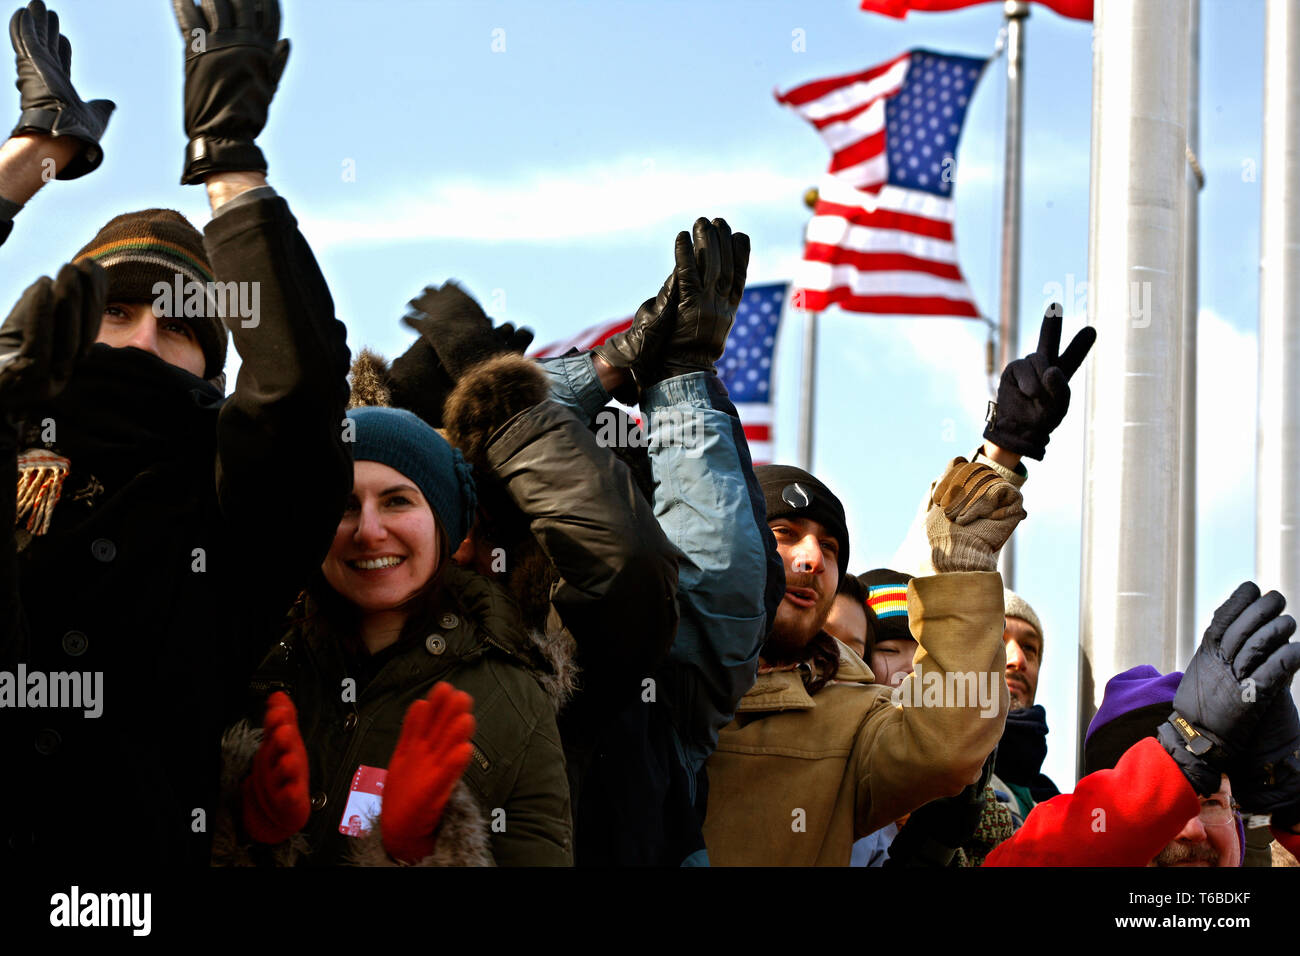 Die Eröffnung der 44. Präsident der Vereinigten Staaten. Amanda Stein, Megan Auburn, George Jünger, David Pinskey, Ilene Tran, Christine Tran und Akisan Gupta Anfeuern als Präsident Barack Obama seine Rede hält. Stockfoto